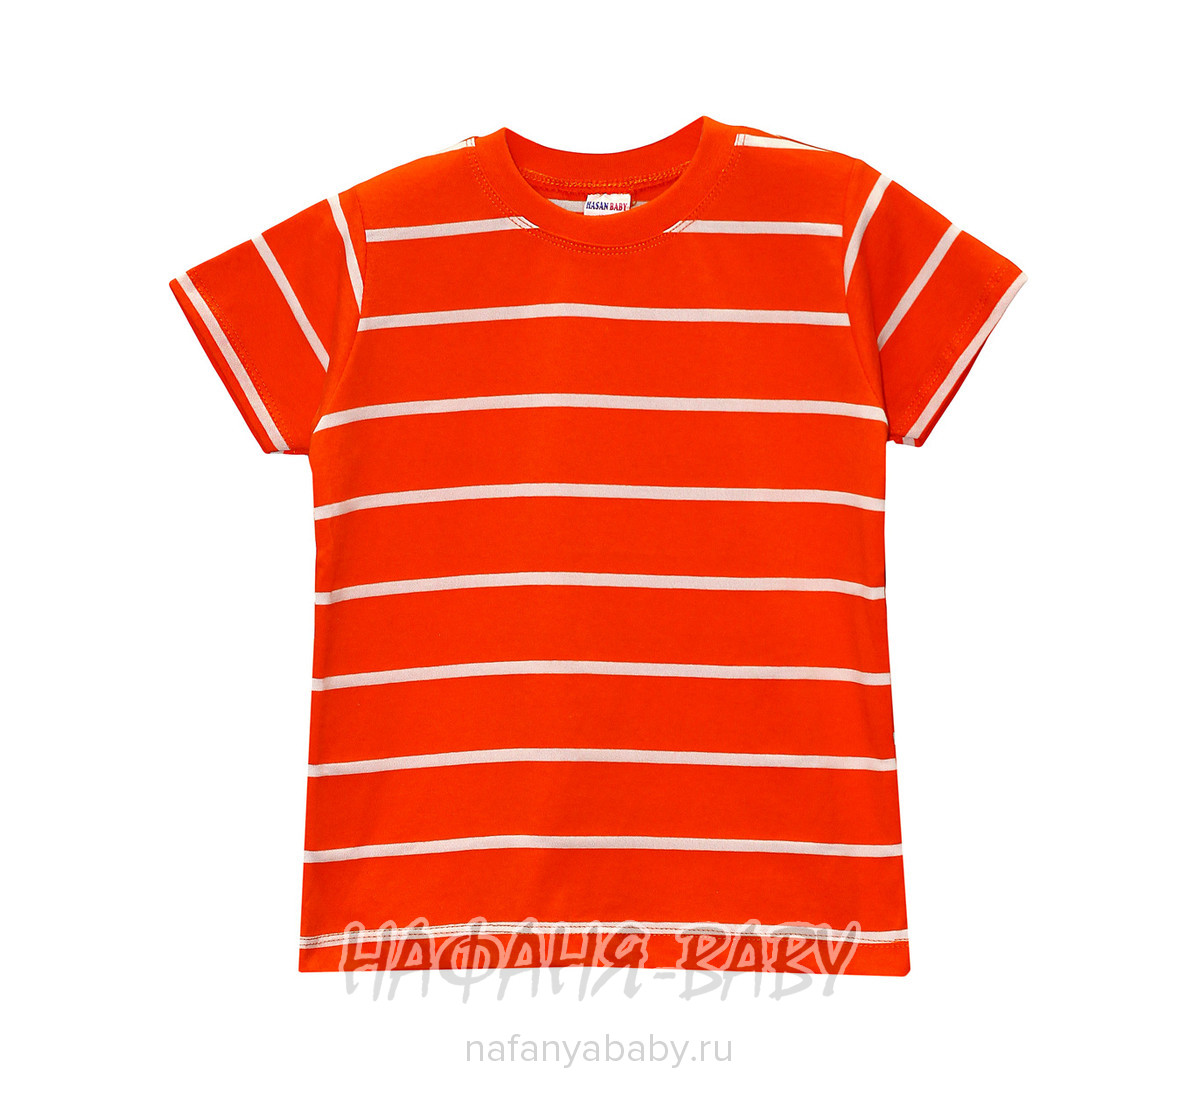 Детская футболка HASAN Bebe, купить в интернет магазине Нафаня. арт: 4216.